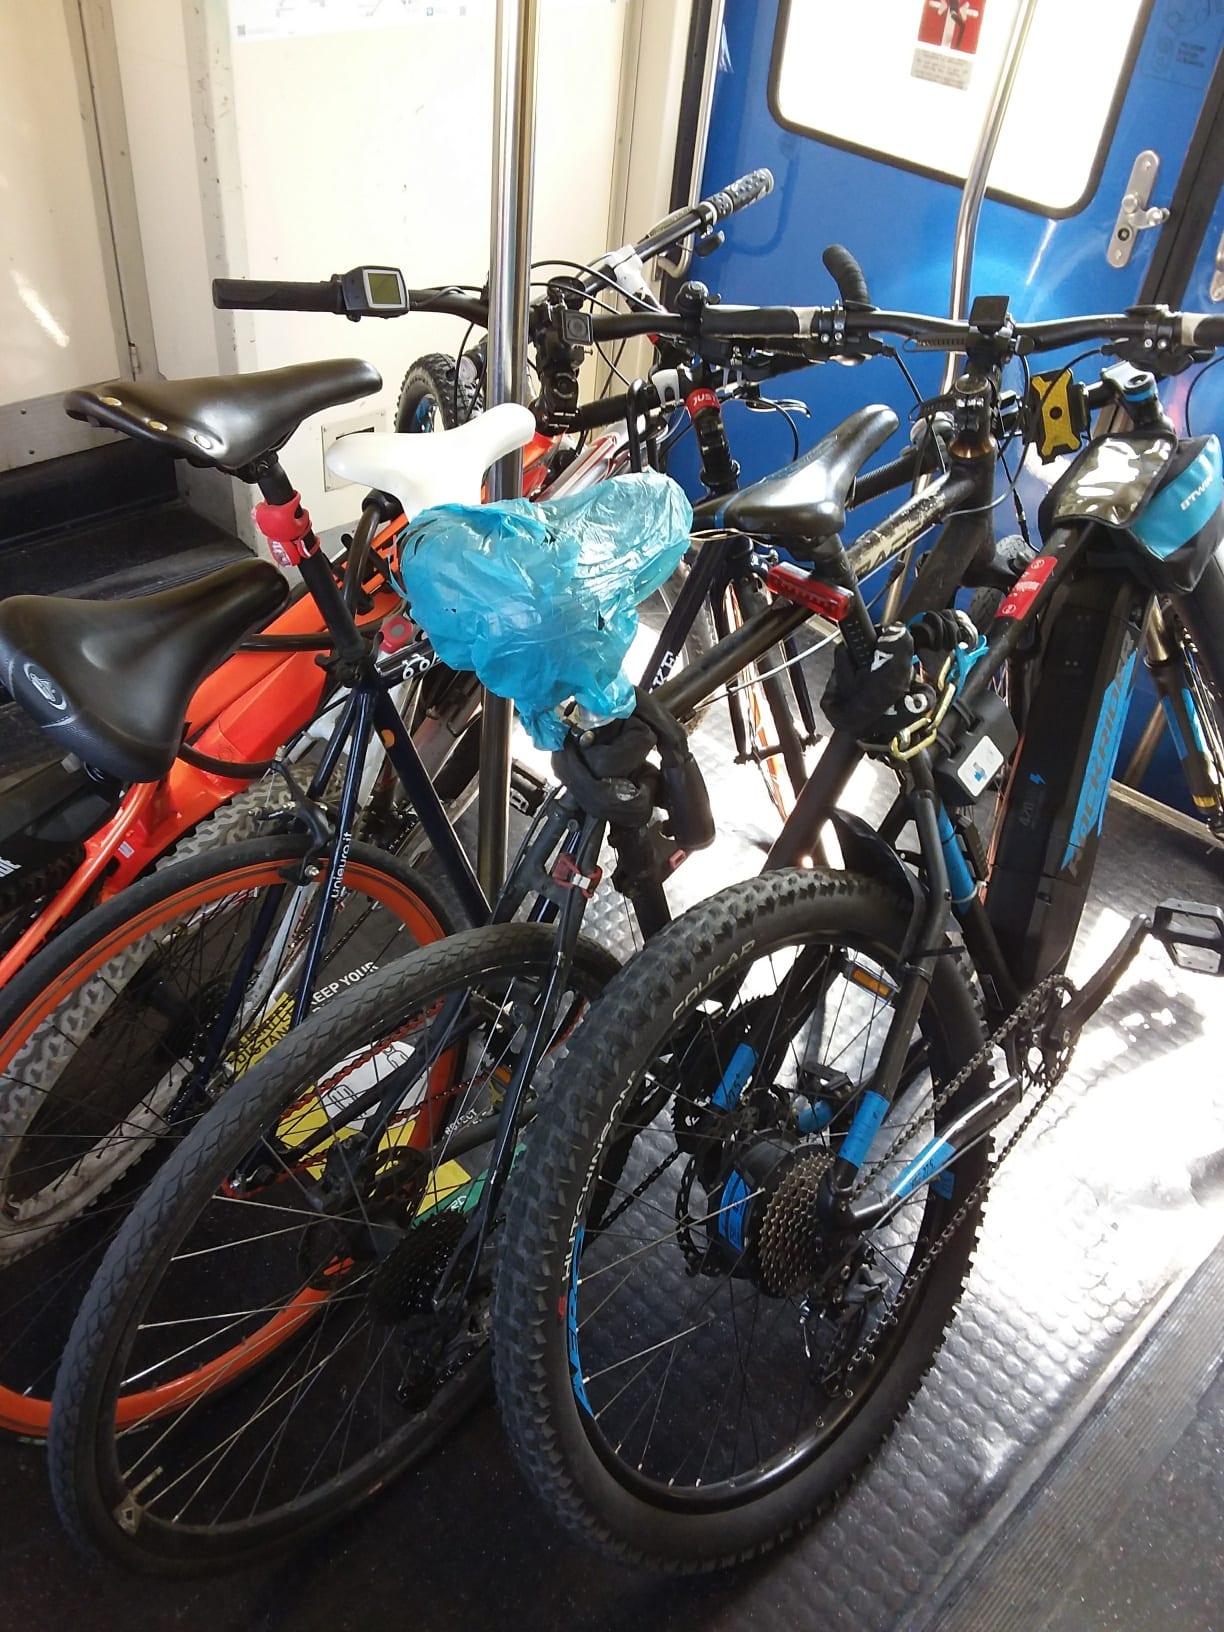 Lombardia, interpellanza Pd su trasporto bici su treni Trenord. Ecco le novità